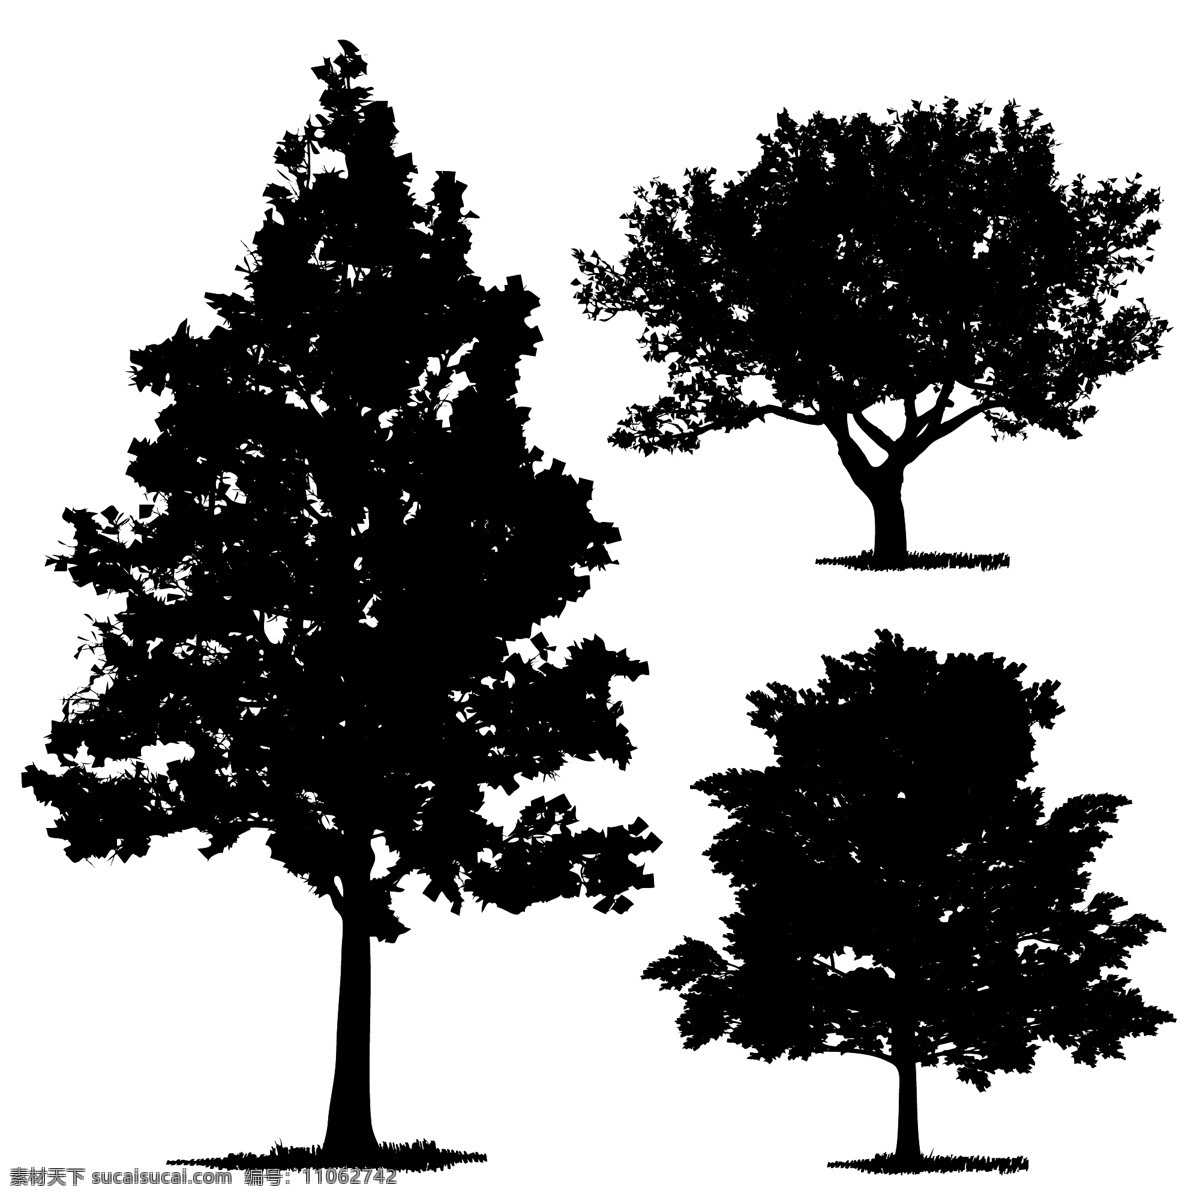 园林 矢量 树 装饰 树木 矢量素材 设计素材 背景素材